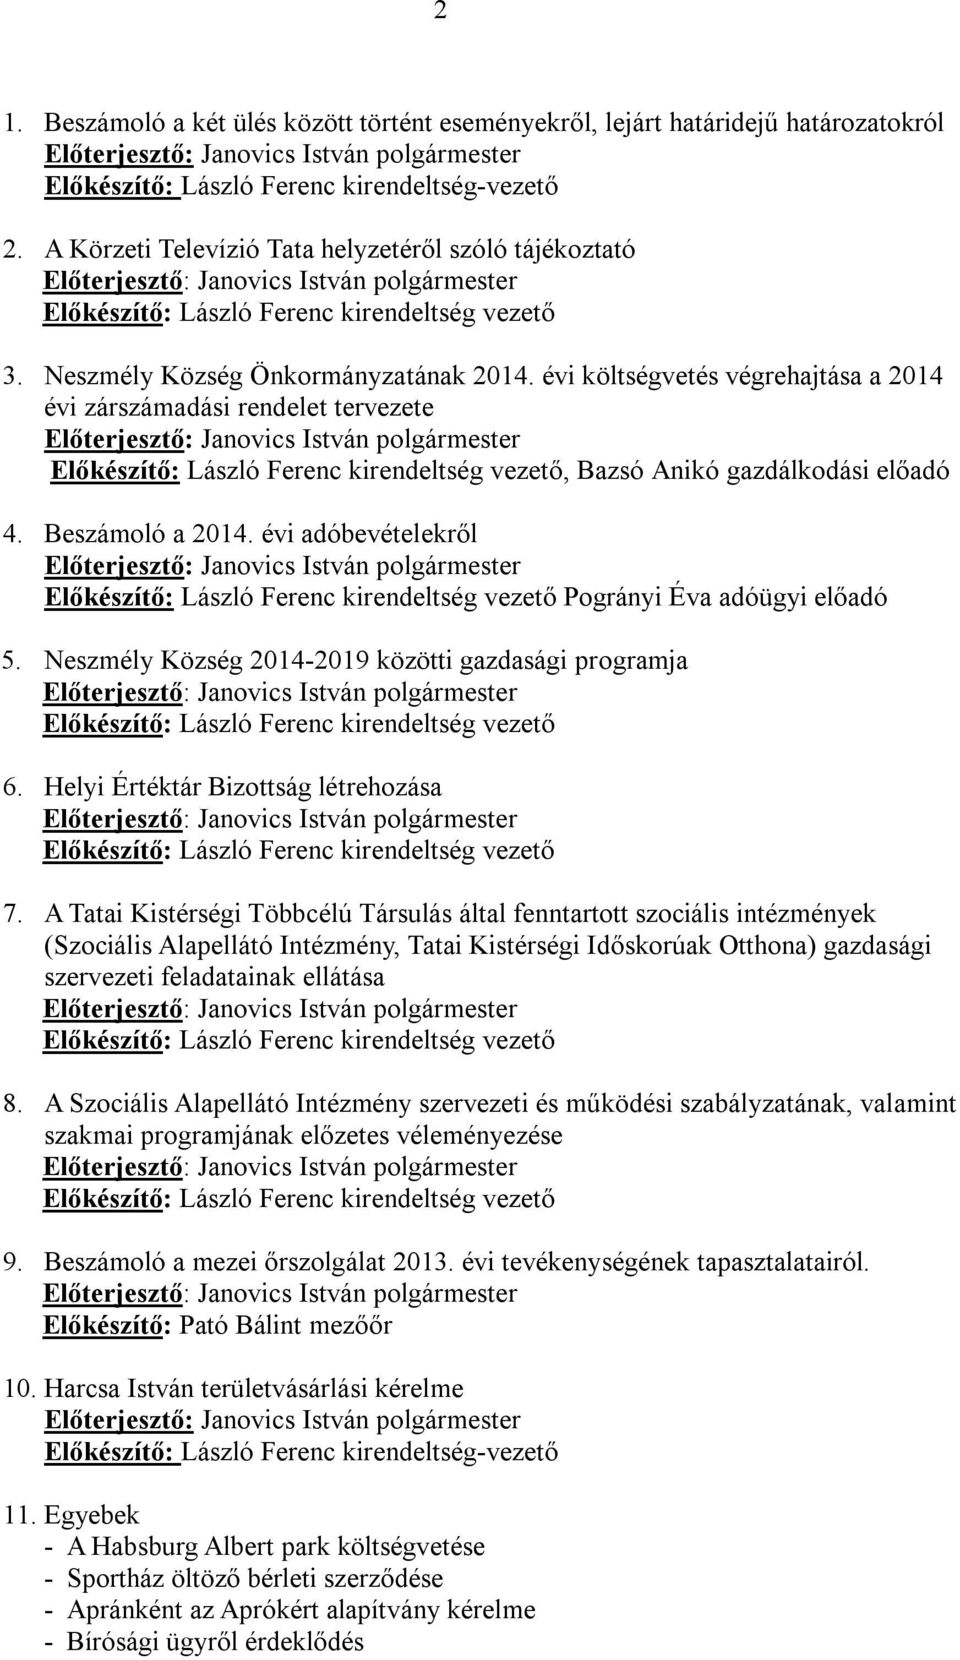 évi adóbevételekről Pogrányi Éva adóügyi előadó 5. Neszmély Község 2014-2019 közötti gazdasági programja 6. Helyi Értéktár Bizottság létrehozása 7.